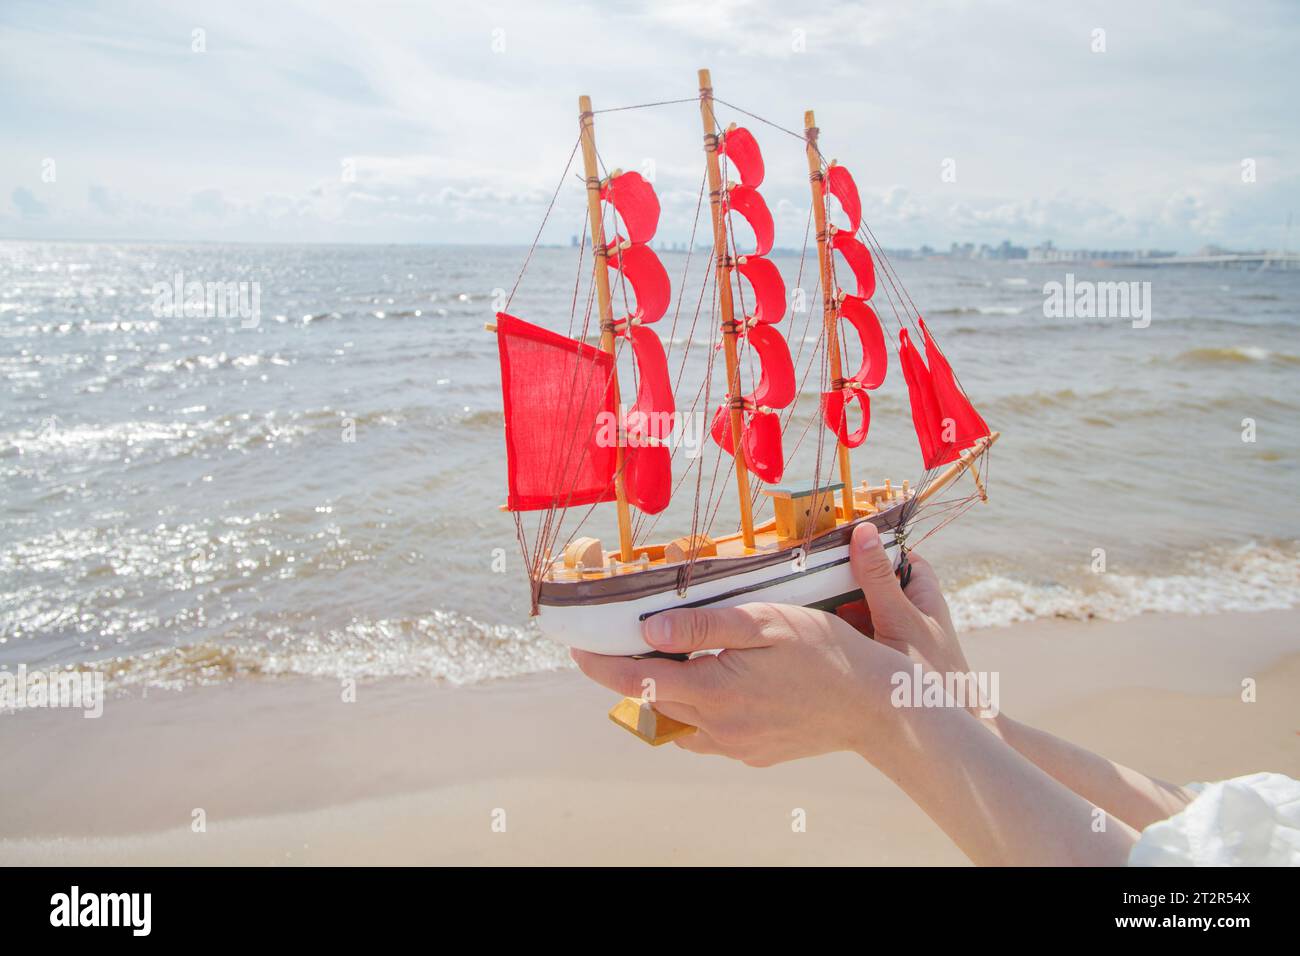 Concetto di viaggio e crociera. Naviga con vele rosse contro il mare, la spiaggia e le nuvole del cielo Foto Stock